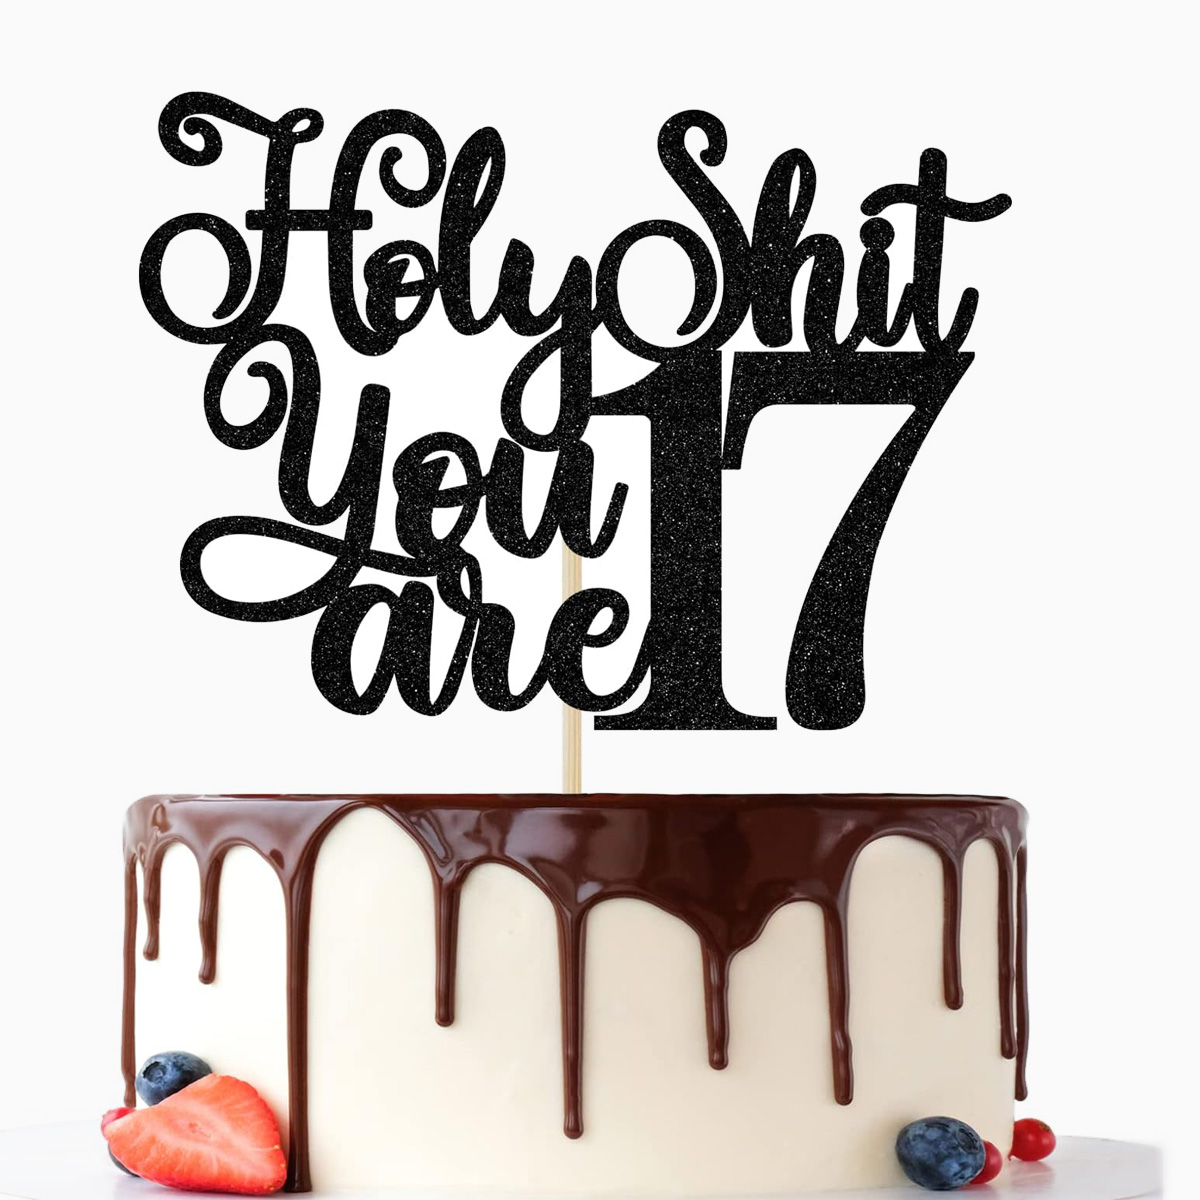 17-birthday-cakes-ideas-ulang-tahun-kue-pesta-kue-cantik